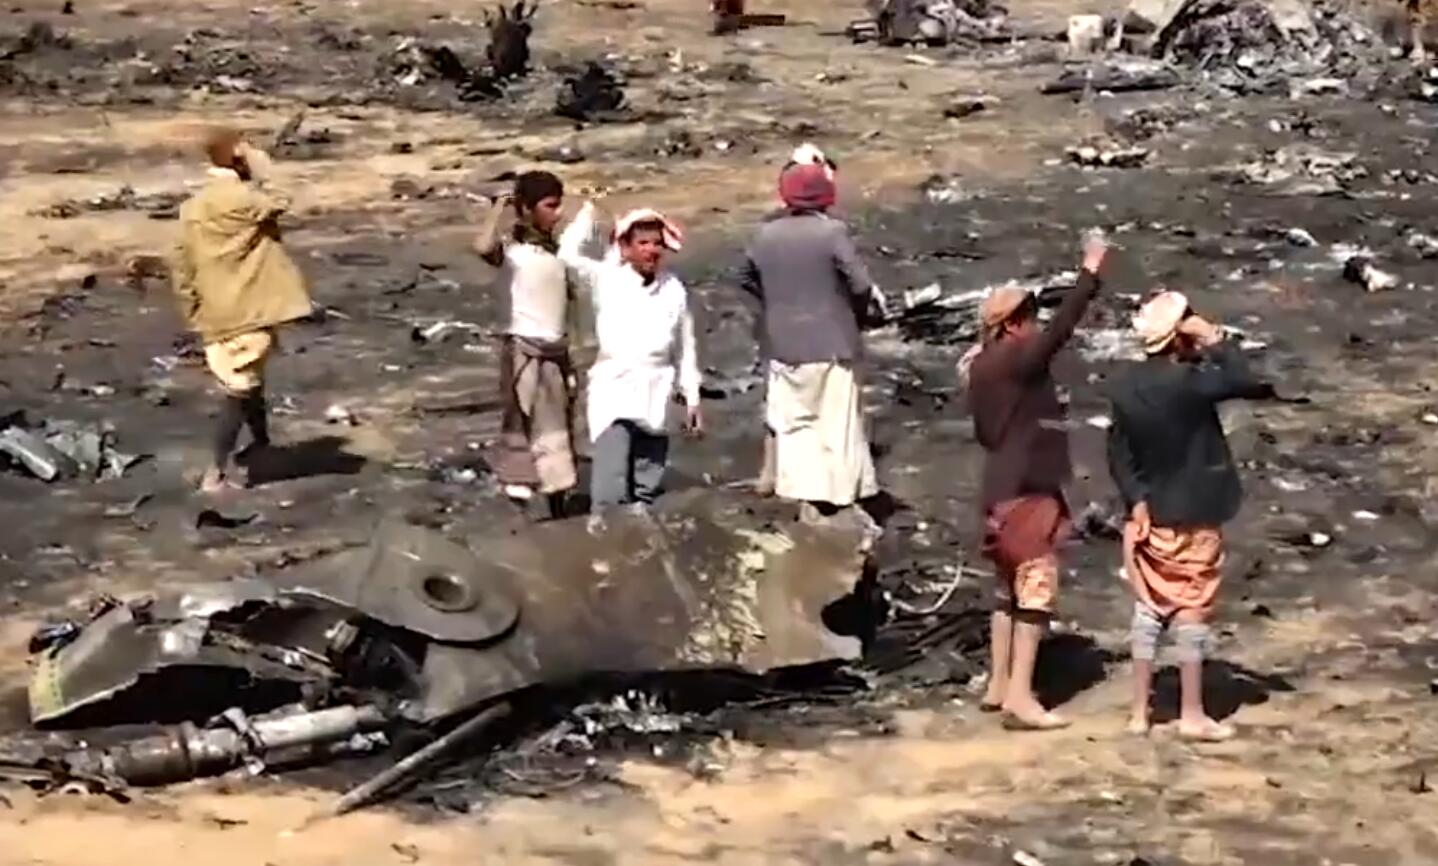 沙特狂风战斗机在也门被击落 遭导弹猎杀全程曝光